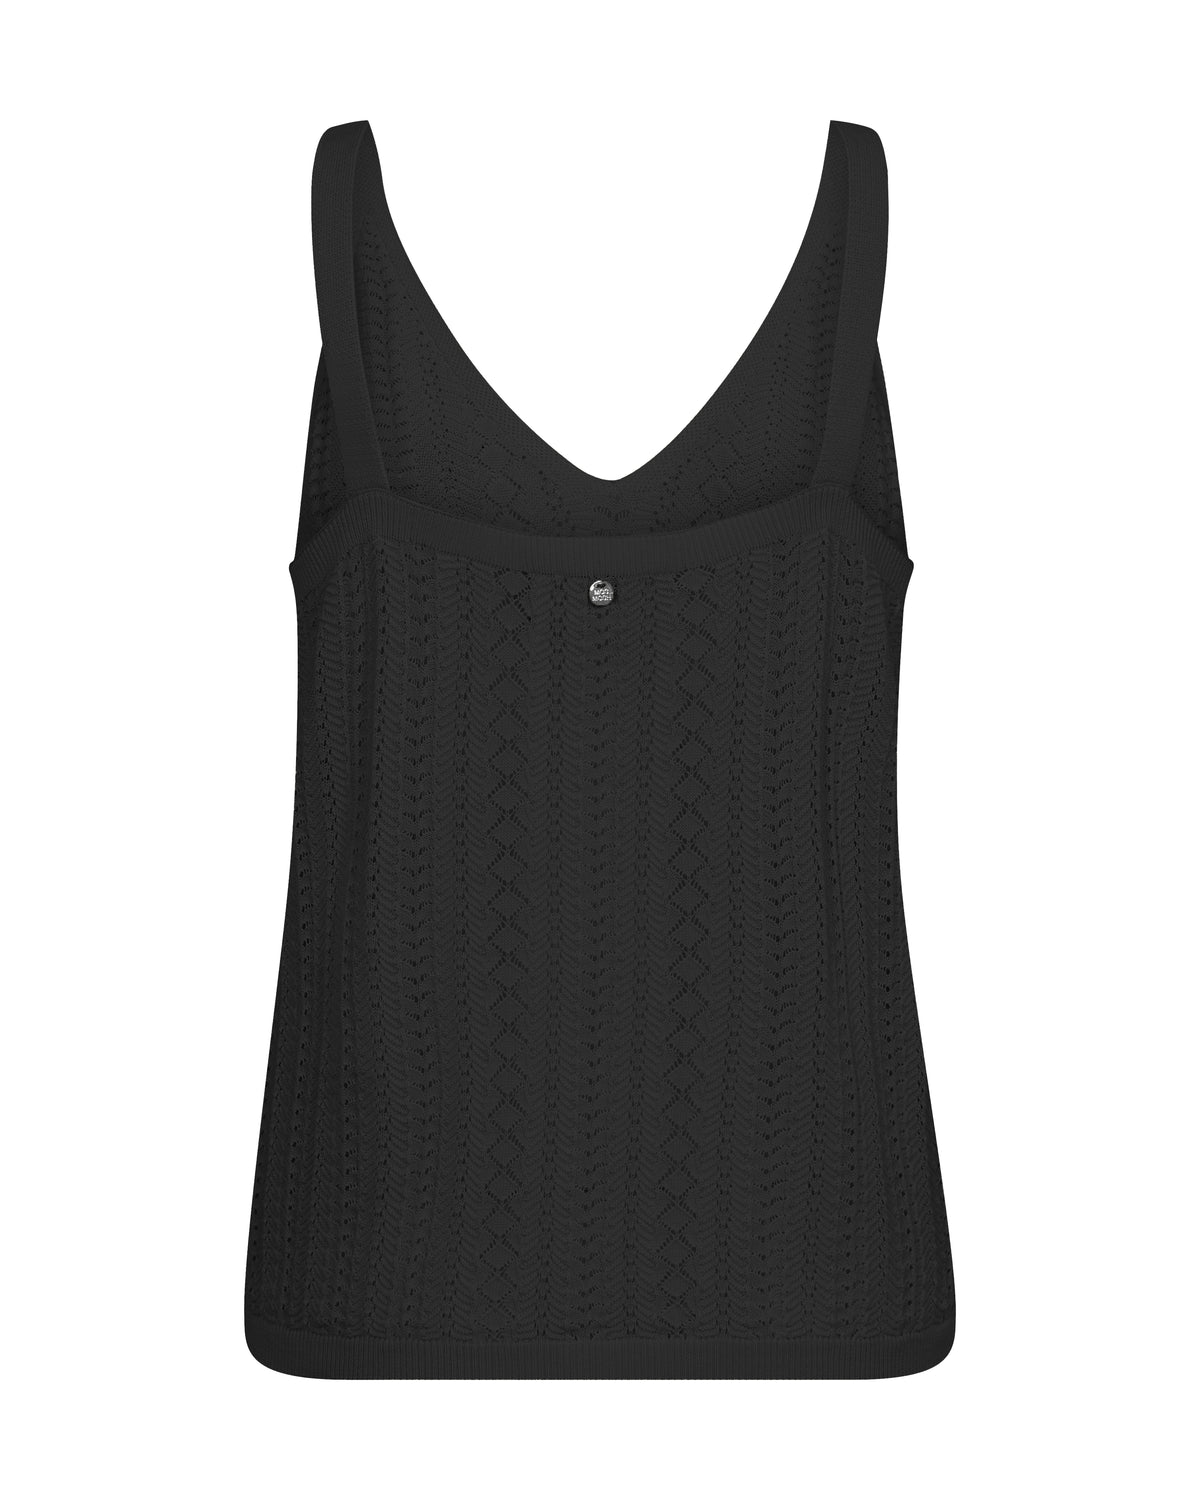 Crochet vest top in black rear view